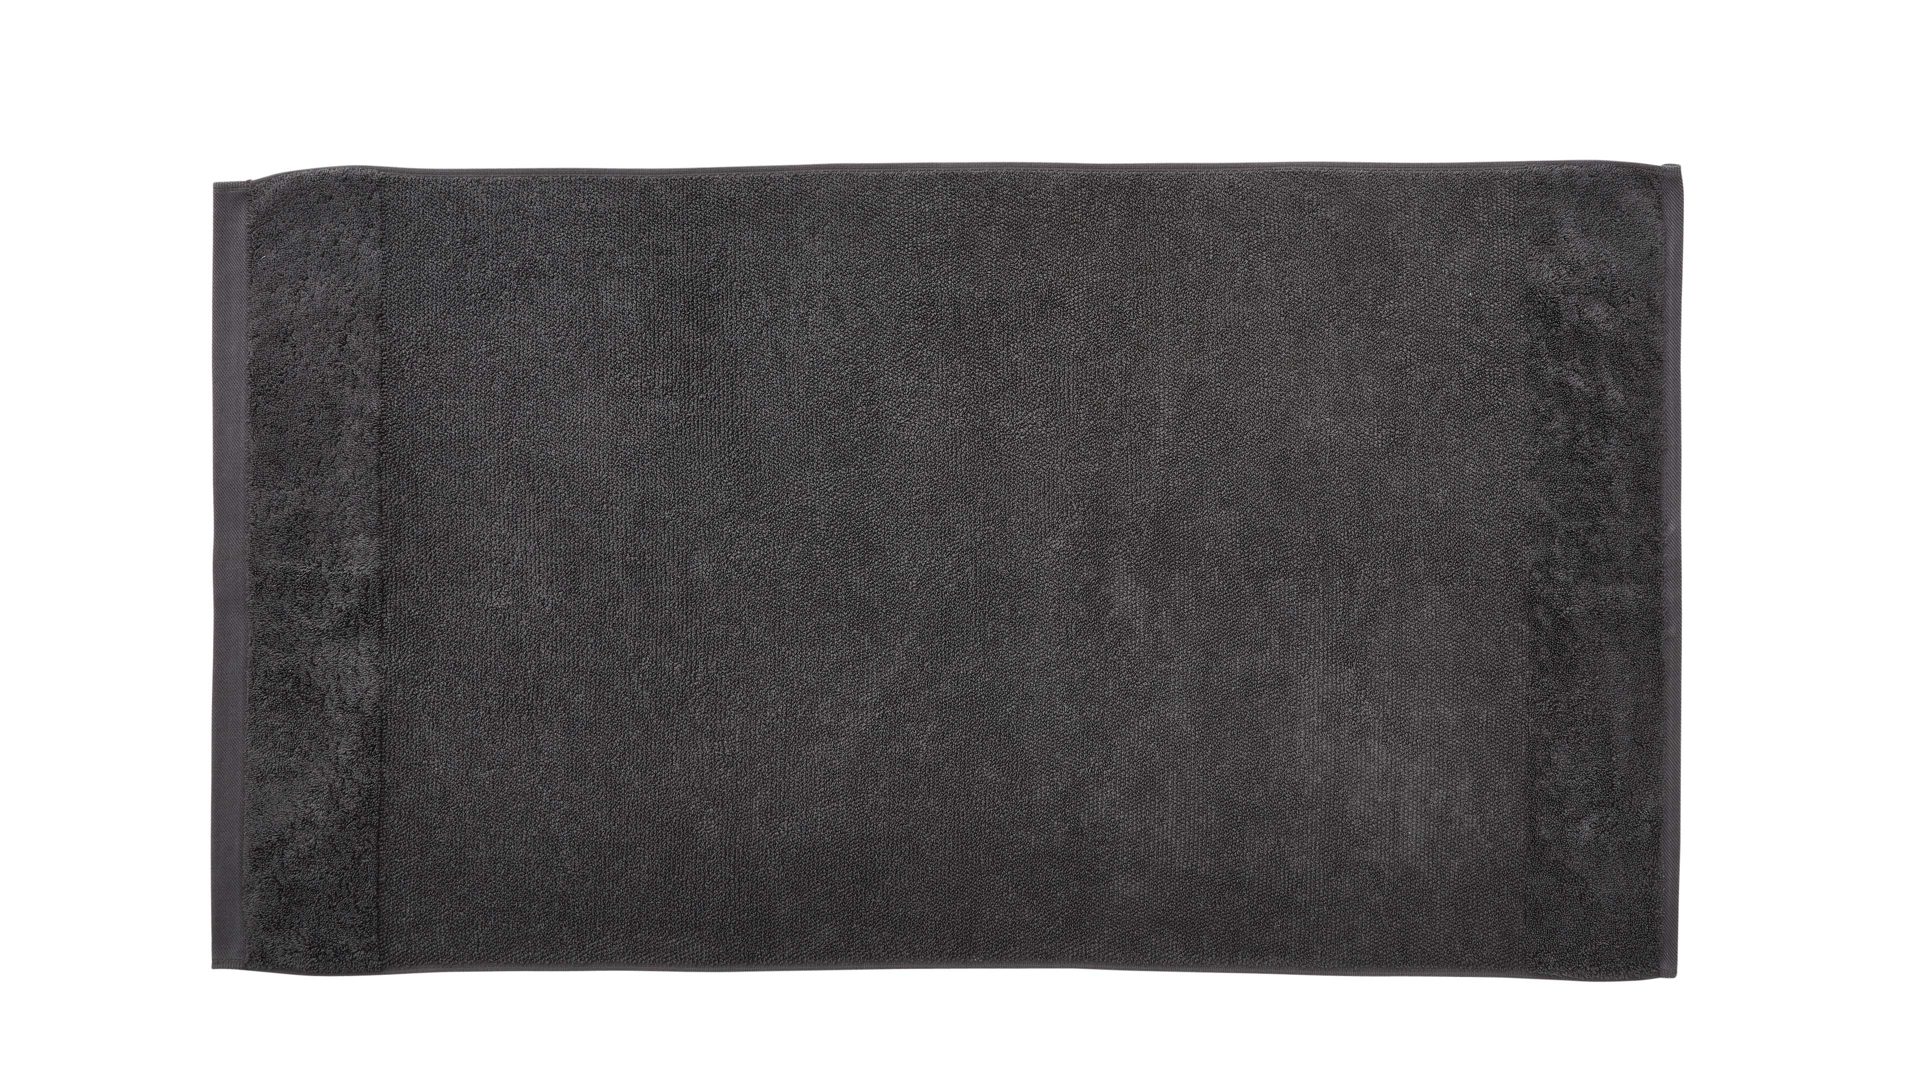 Handtuch Interliving aus Naturfaser in Anthrazit Interliving Handtuch Serie 9108 - Handtuch Anthrazit – ca. 60 x 110 cm